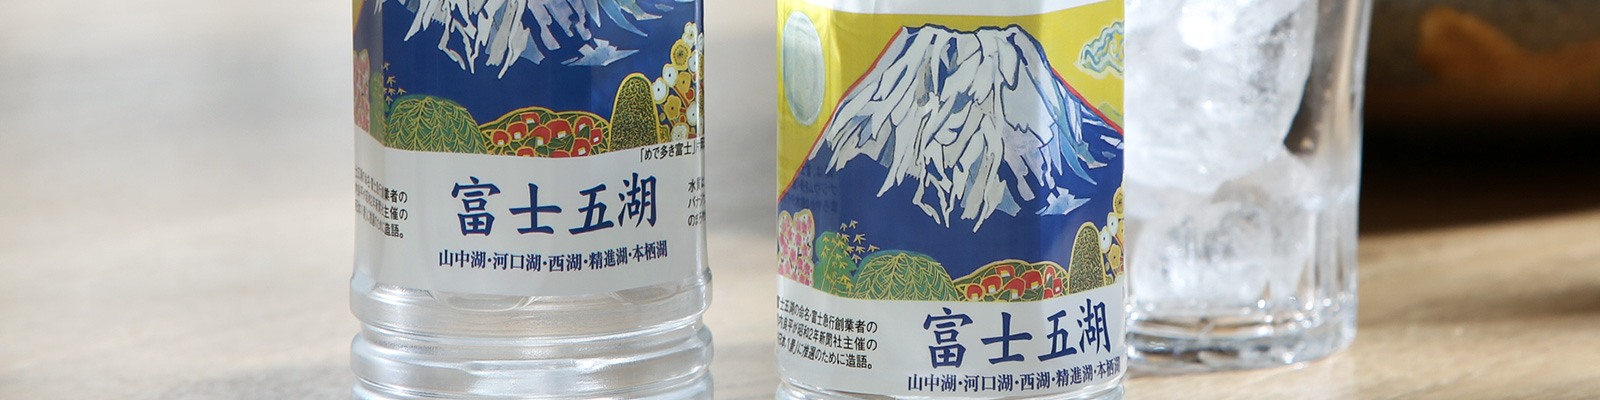 富士山世界遺産登録記念ボトル富士五湖